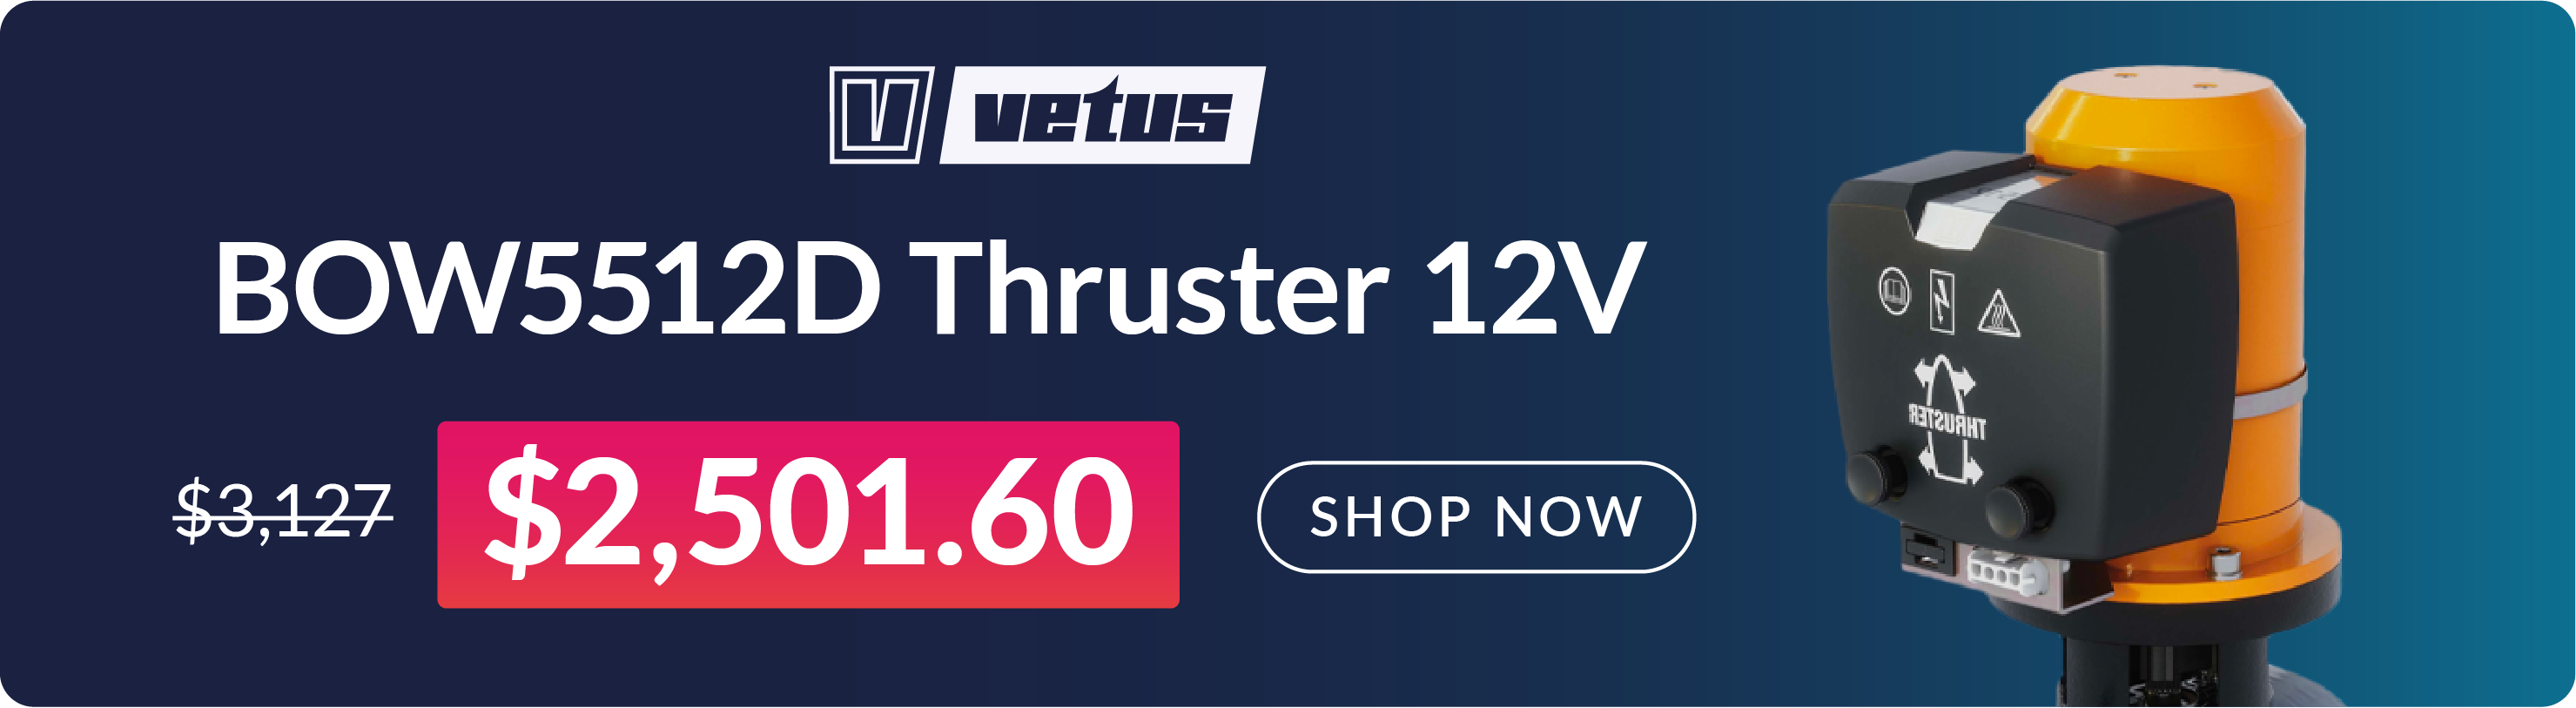 Vetus BOW5512D - Bow thruster 55kgf 12V D150mm